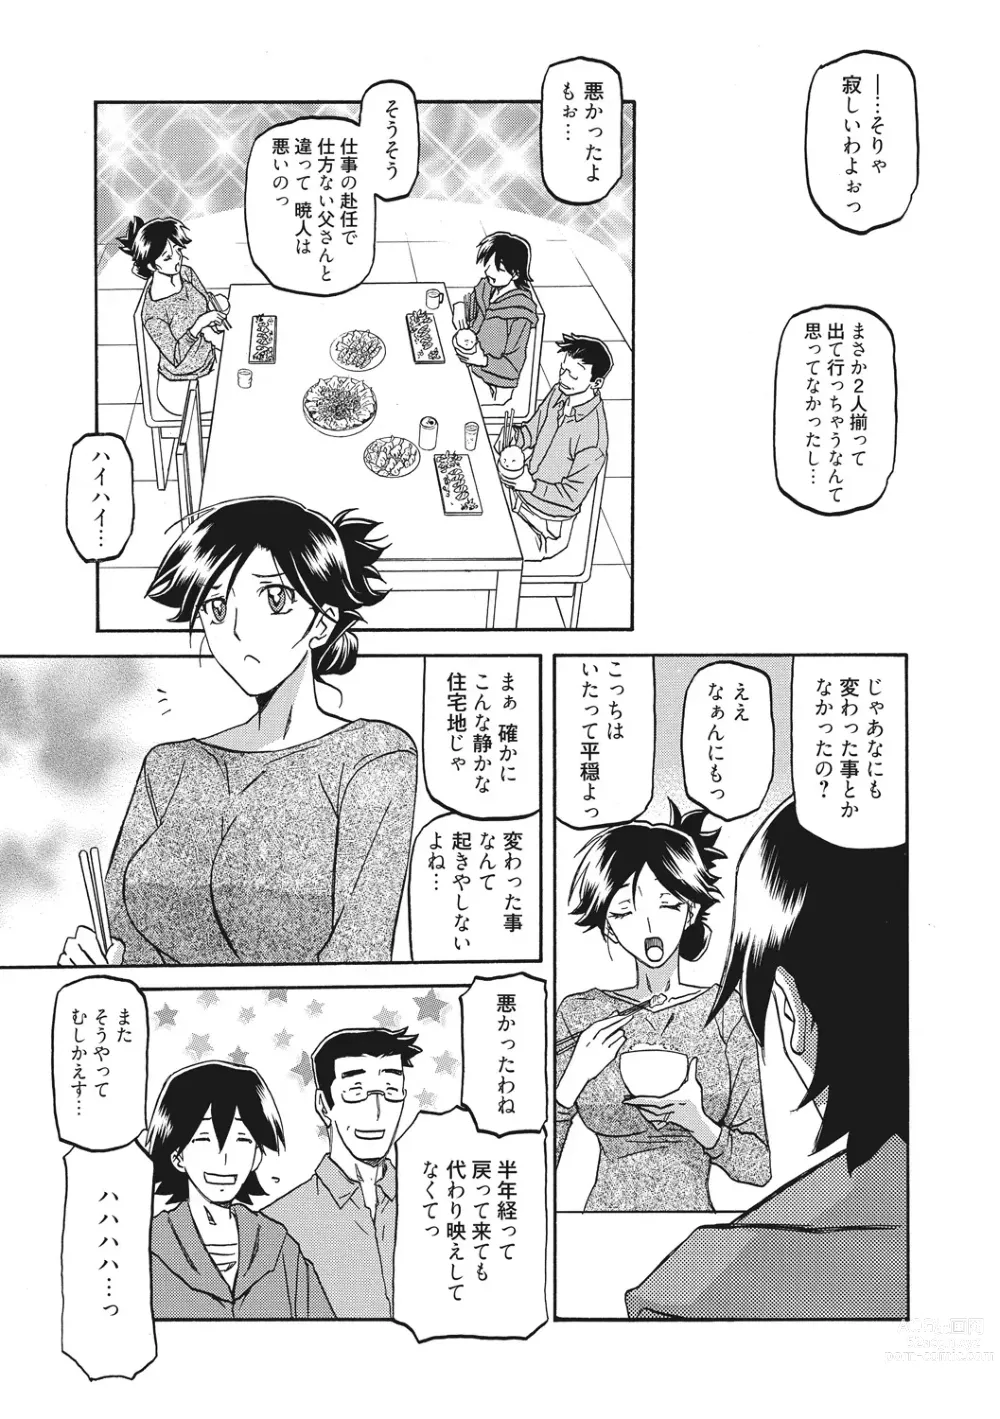 Page 7 of manga Gekkakou no Ori